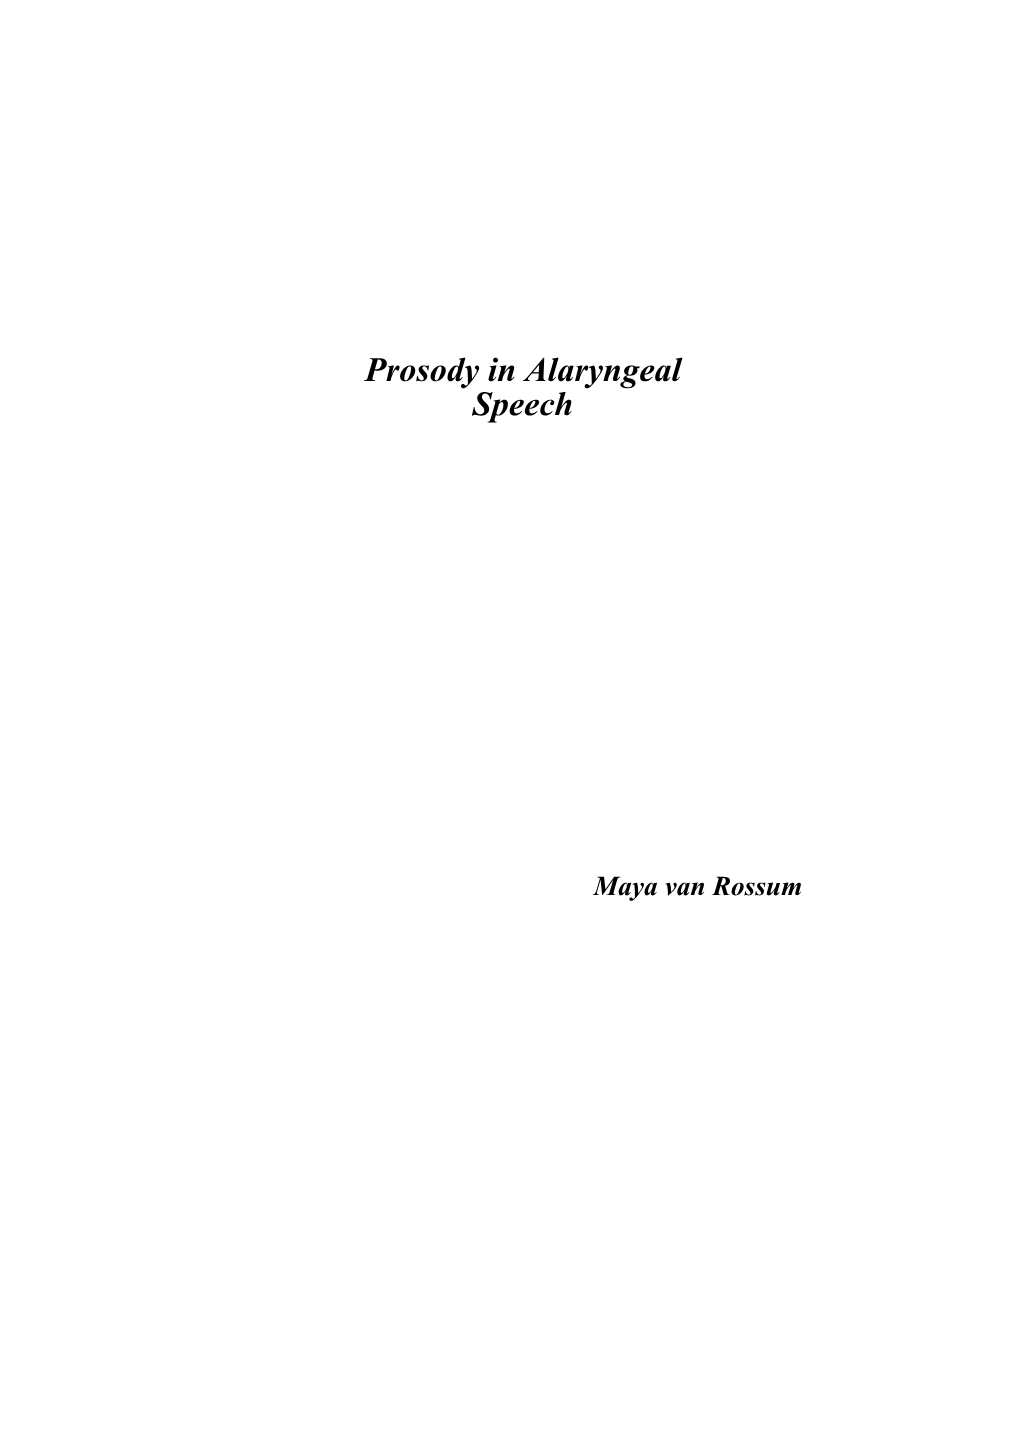 Prosody in Alaryngeal Speech